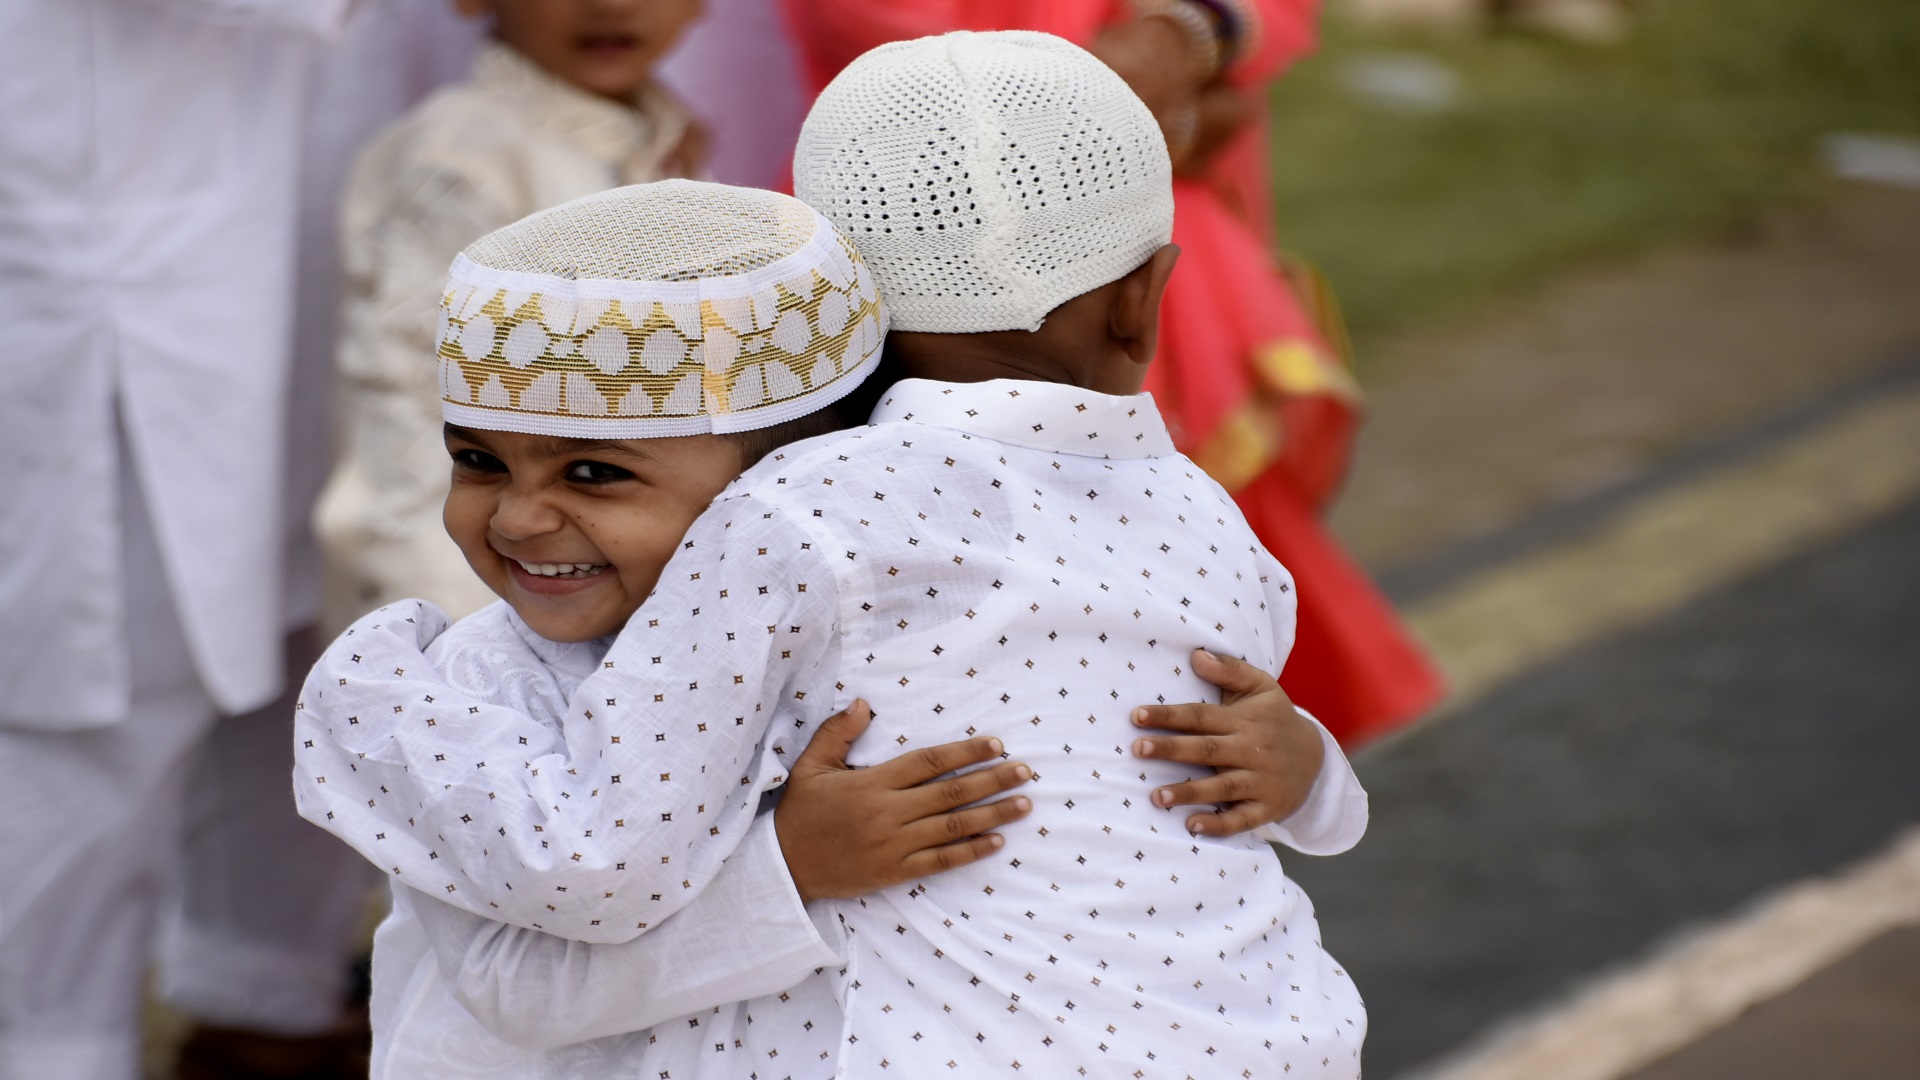 11 أغسطس عيد الأضحى فلكيا والسعودية تحدد إجازة العيد